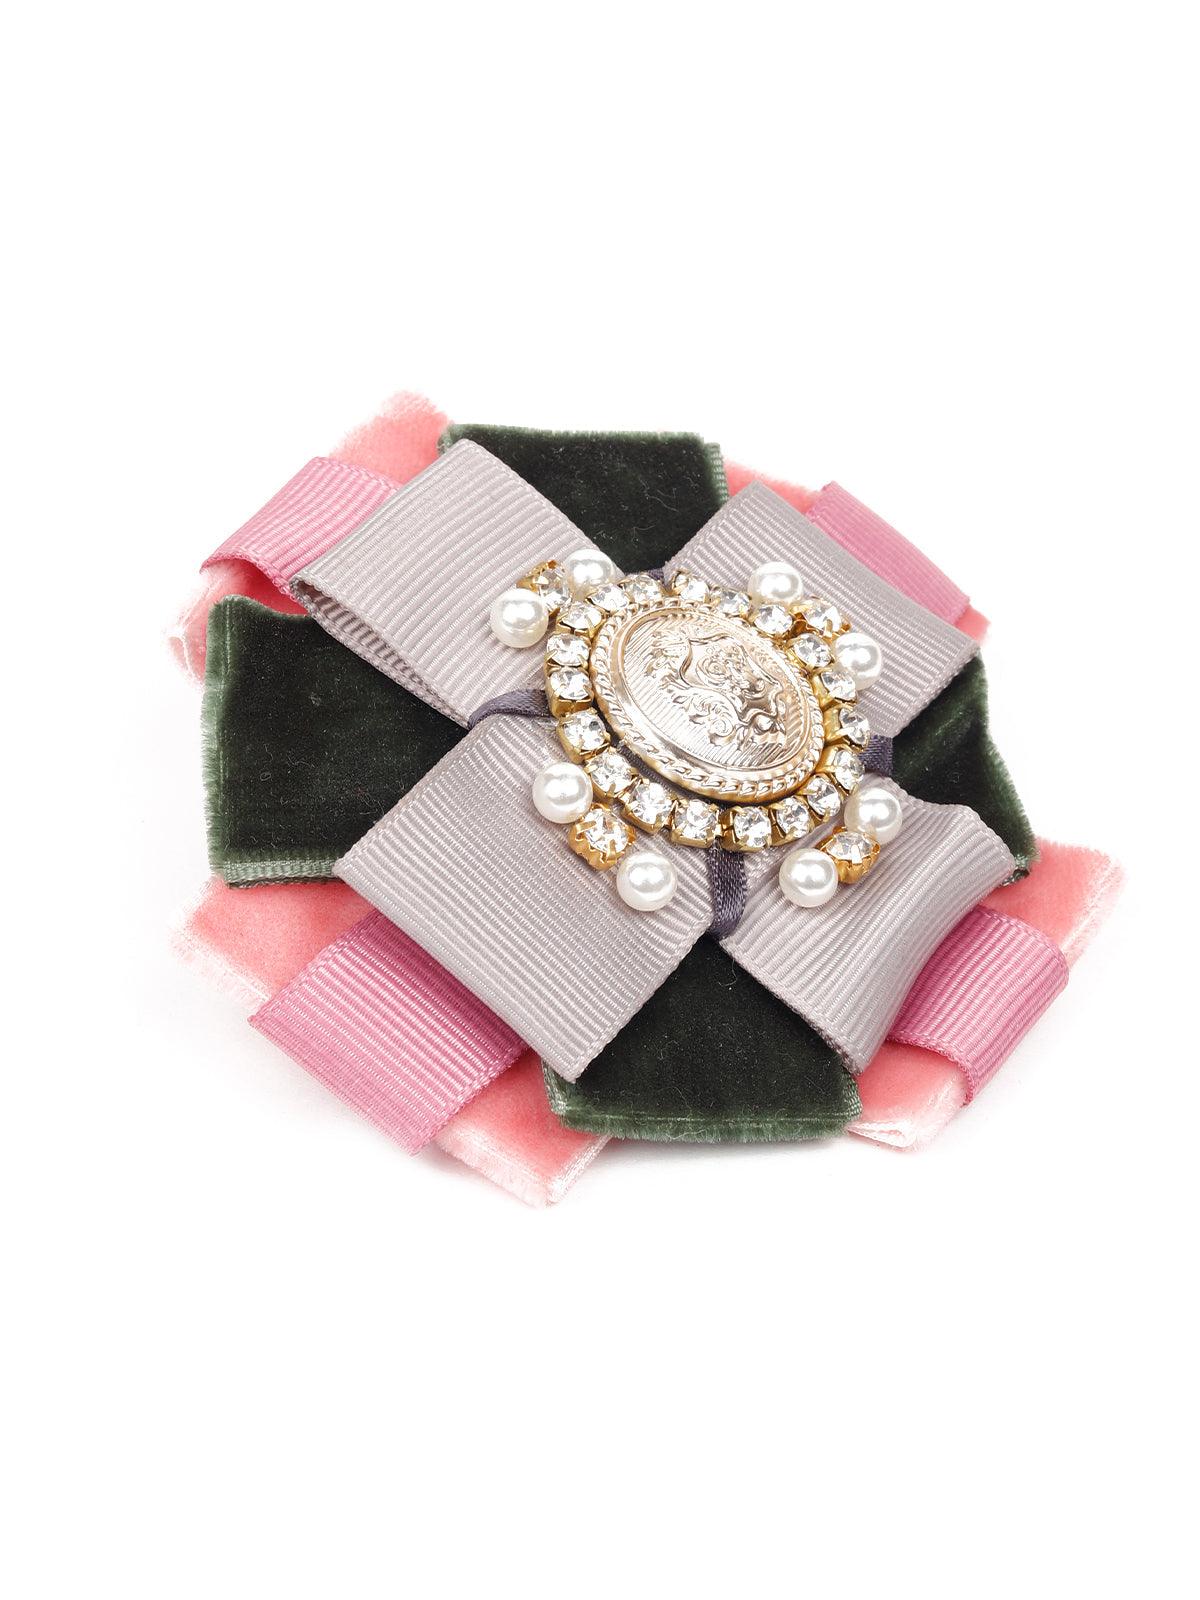 Green and pink soft embellished brooch - Odette